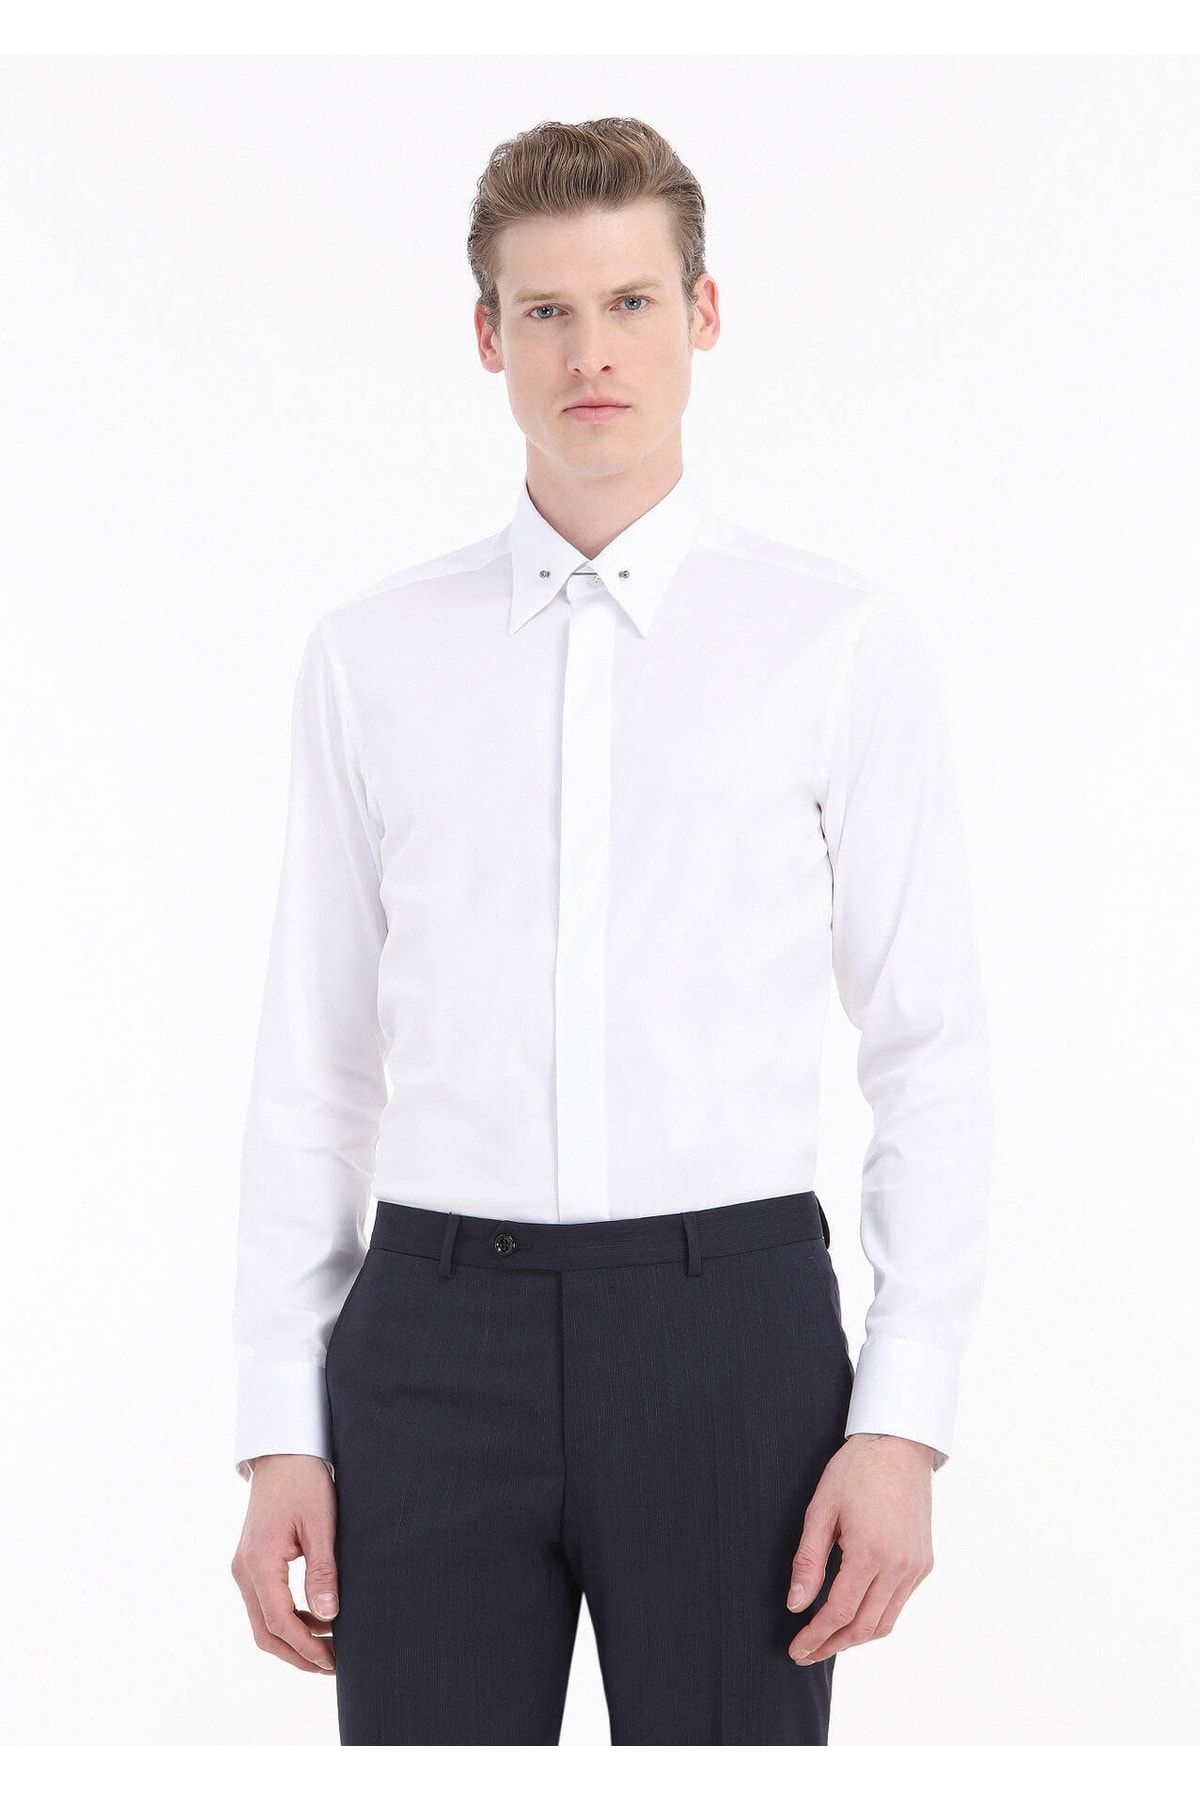 Ramsey Beyaz Düz Slim Fit Dokuma Klasik Pamuk Karışımlı Gömlek